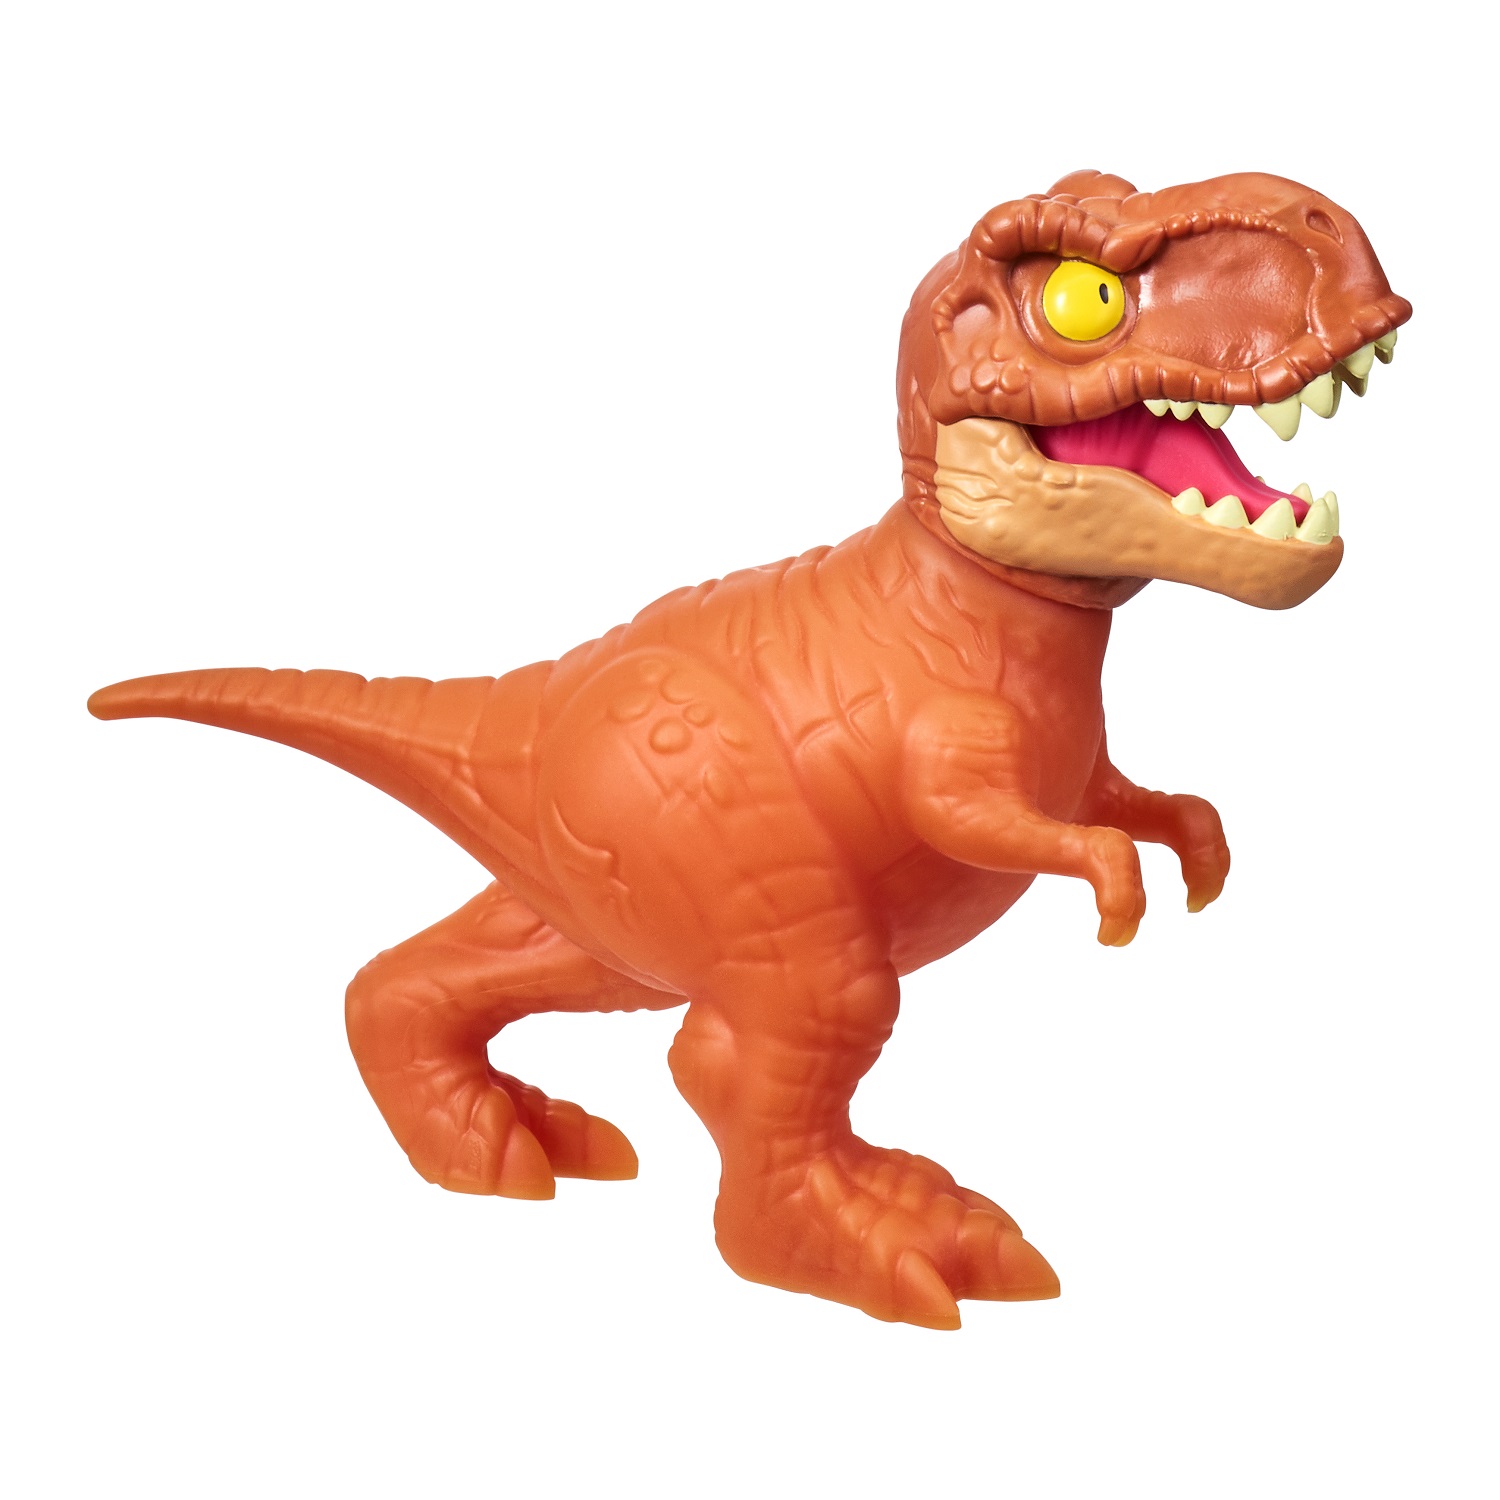 Фигурка GooJitZu Ти-Рэкс 39841 мини игрушка мир юрского периода динозаврик ти рэкс тянущаяся фигурка резина 6 см тм goojitzu